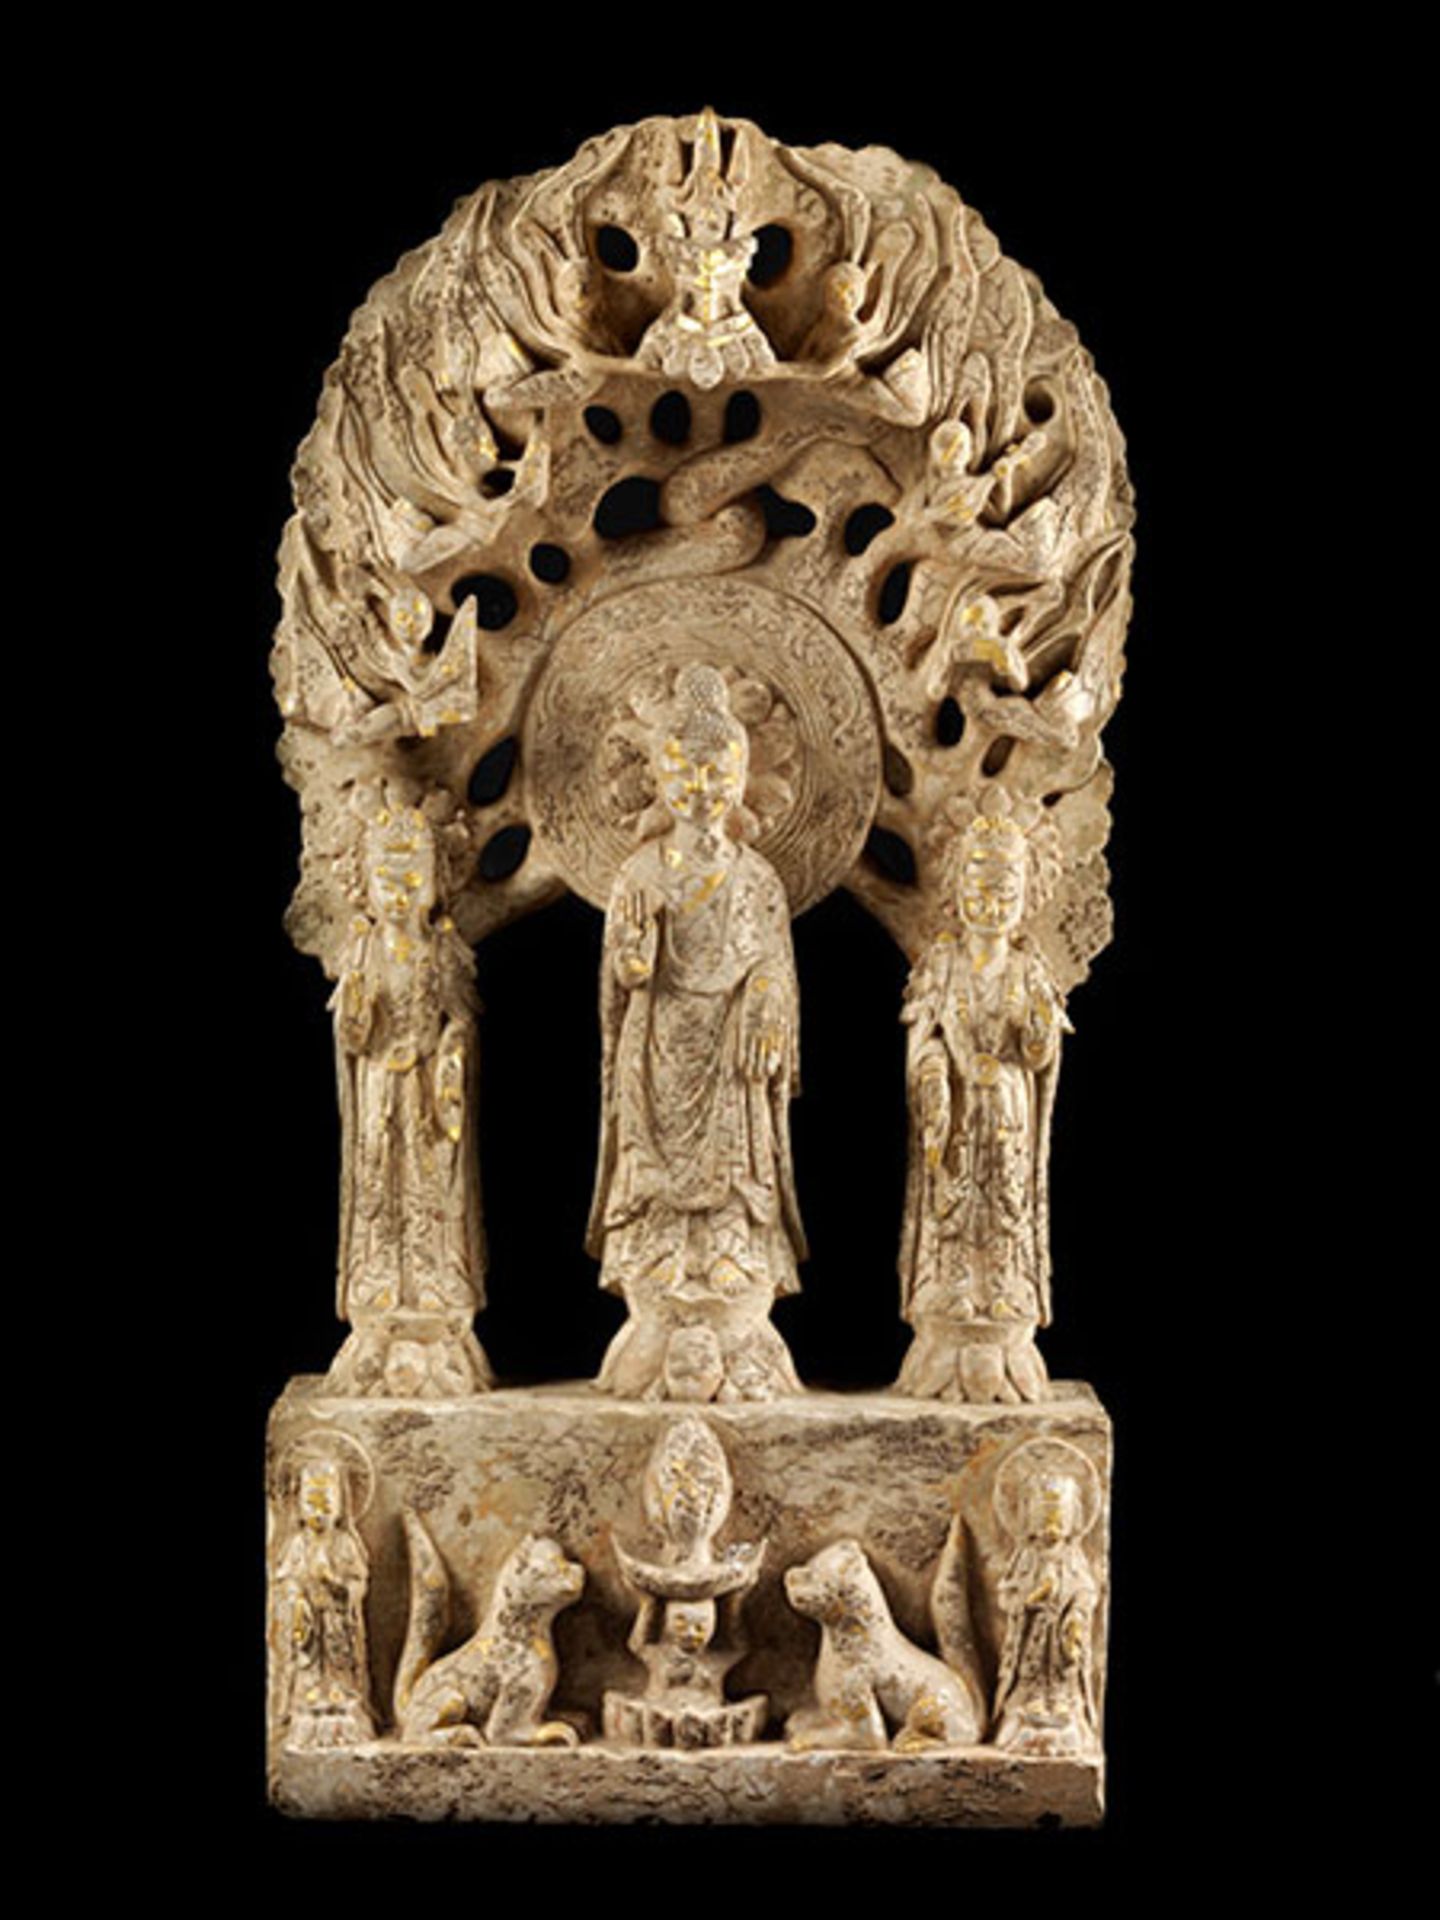 Chinesische Buddha-Gruppe Ca. 100 x 50 cm. Die aus dem chinesischen Kulturraum stammende